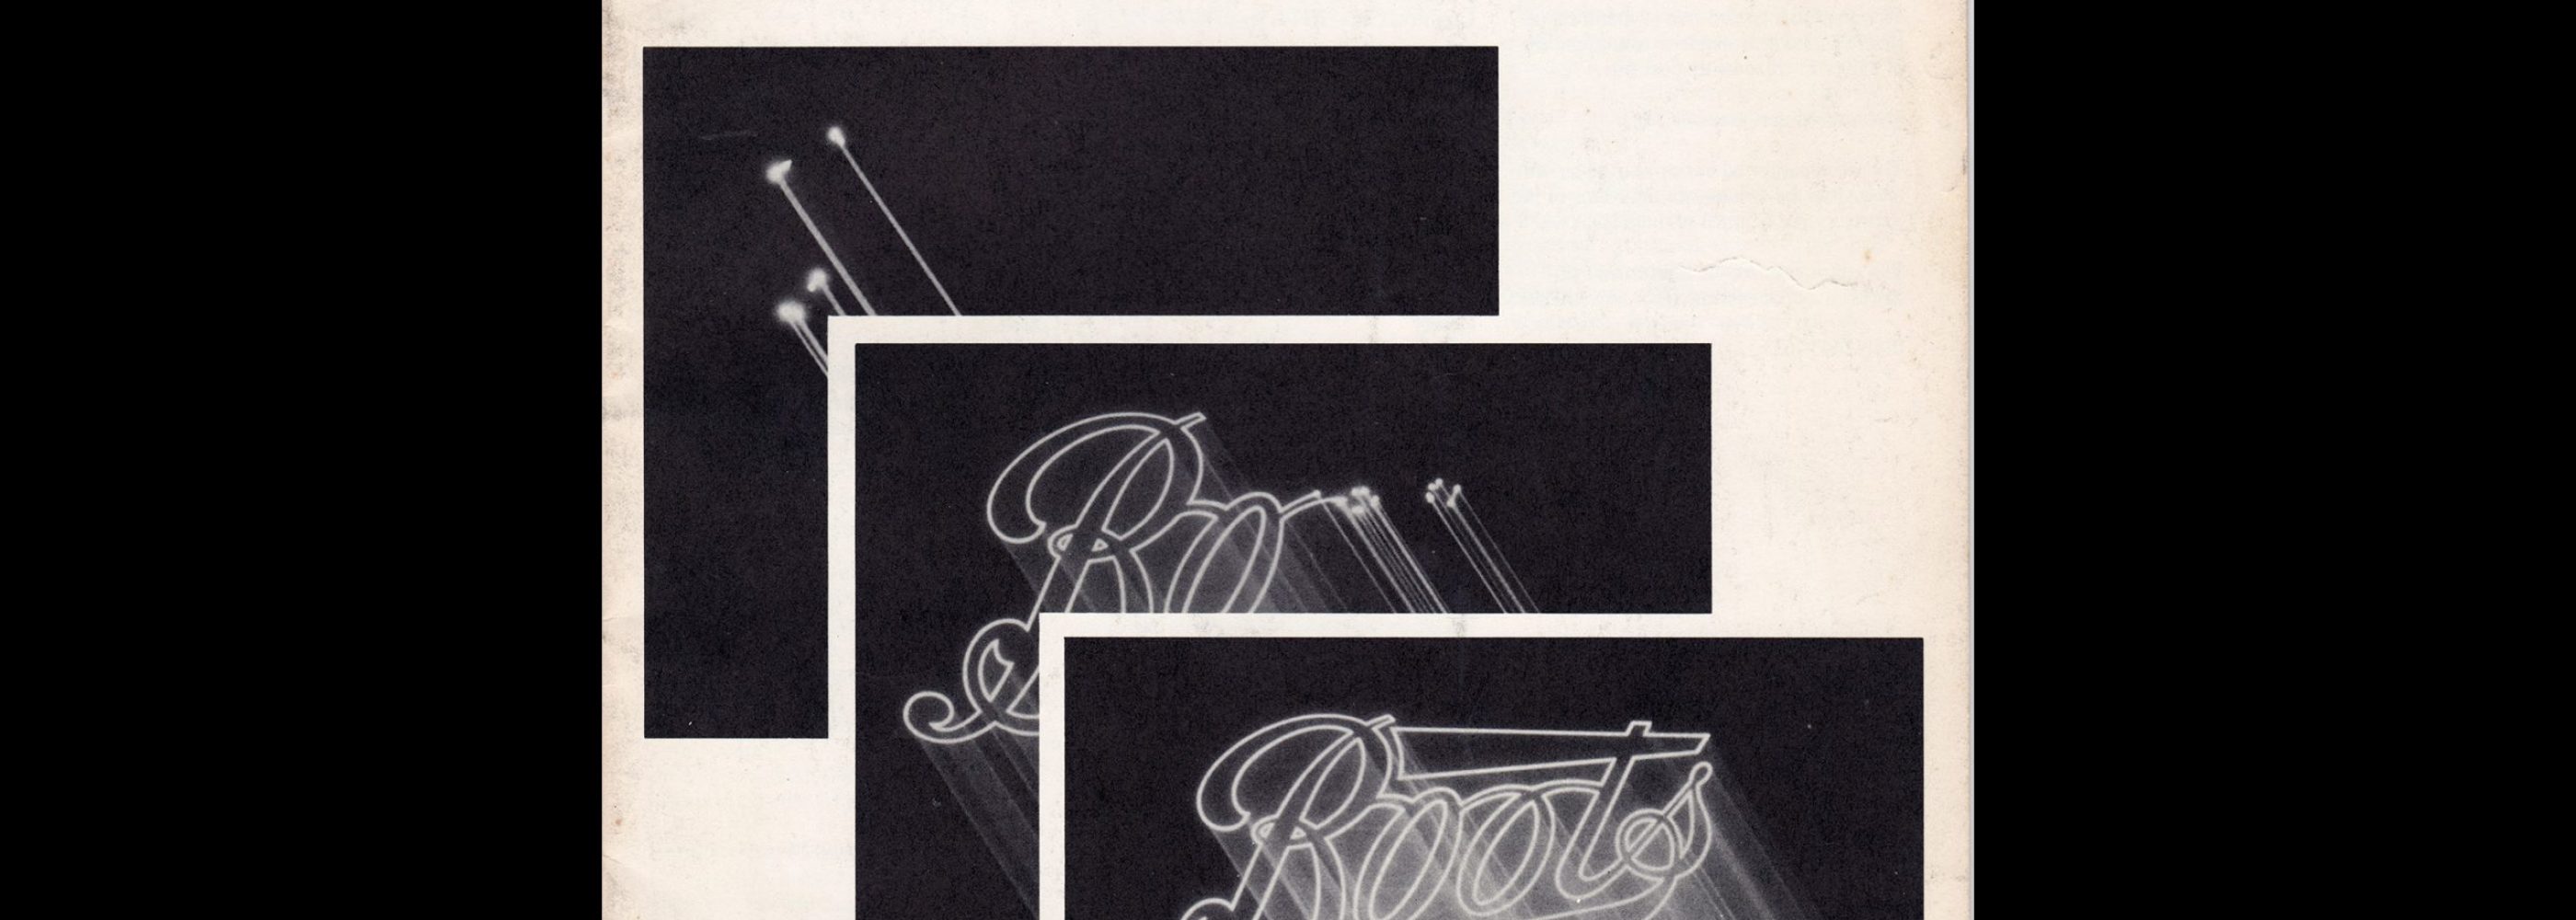 Typographic, 15, January 1981